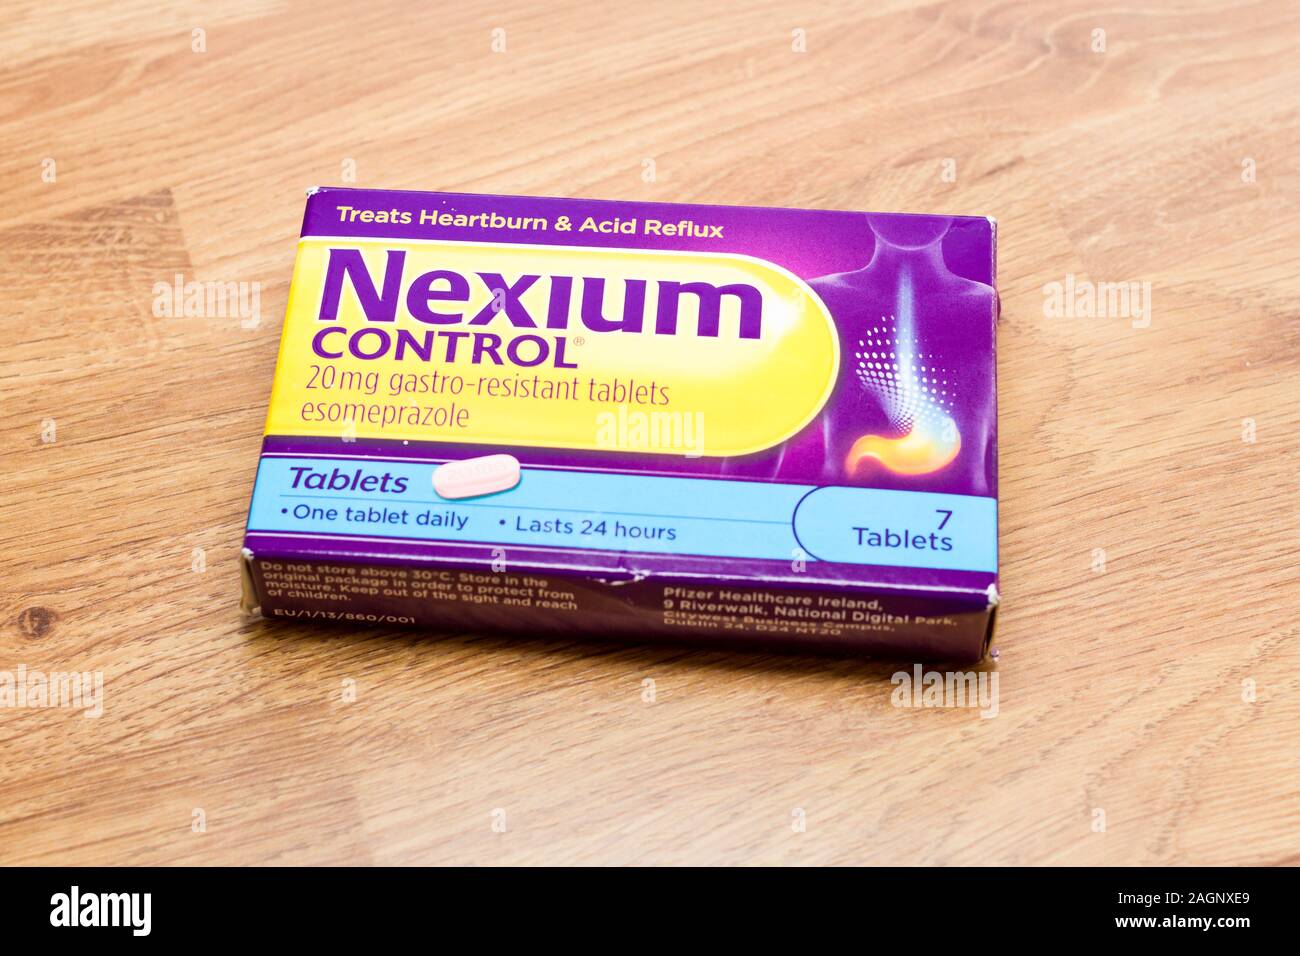 Photographie de Nexium Control Esomeprazole comprimés pour traiter les brûlures d'estomac et le reflux acide Banque D'Images